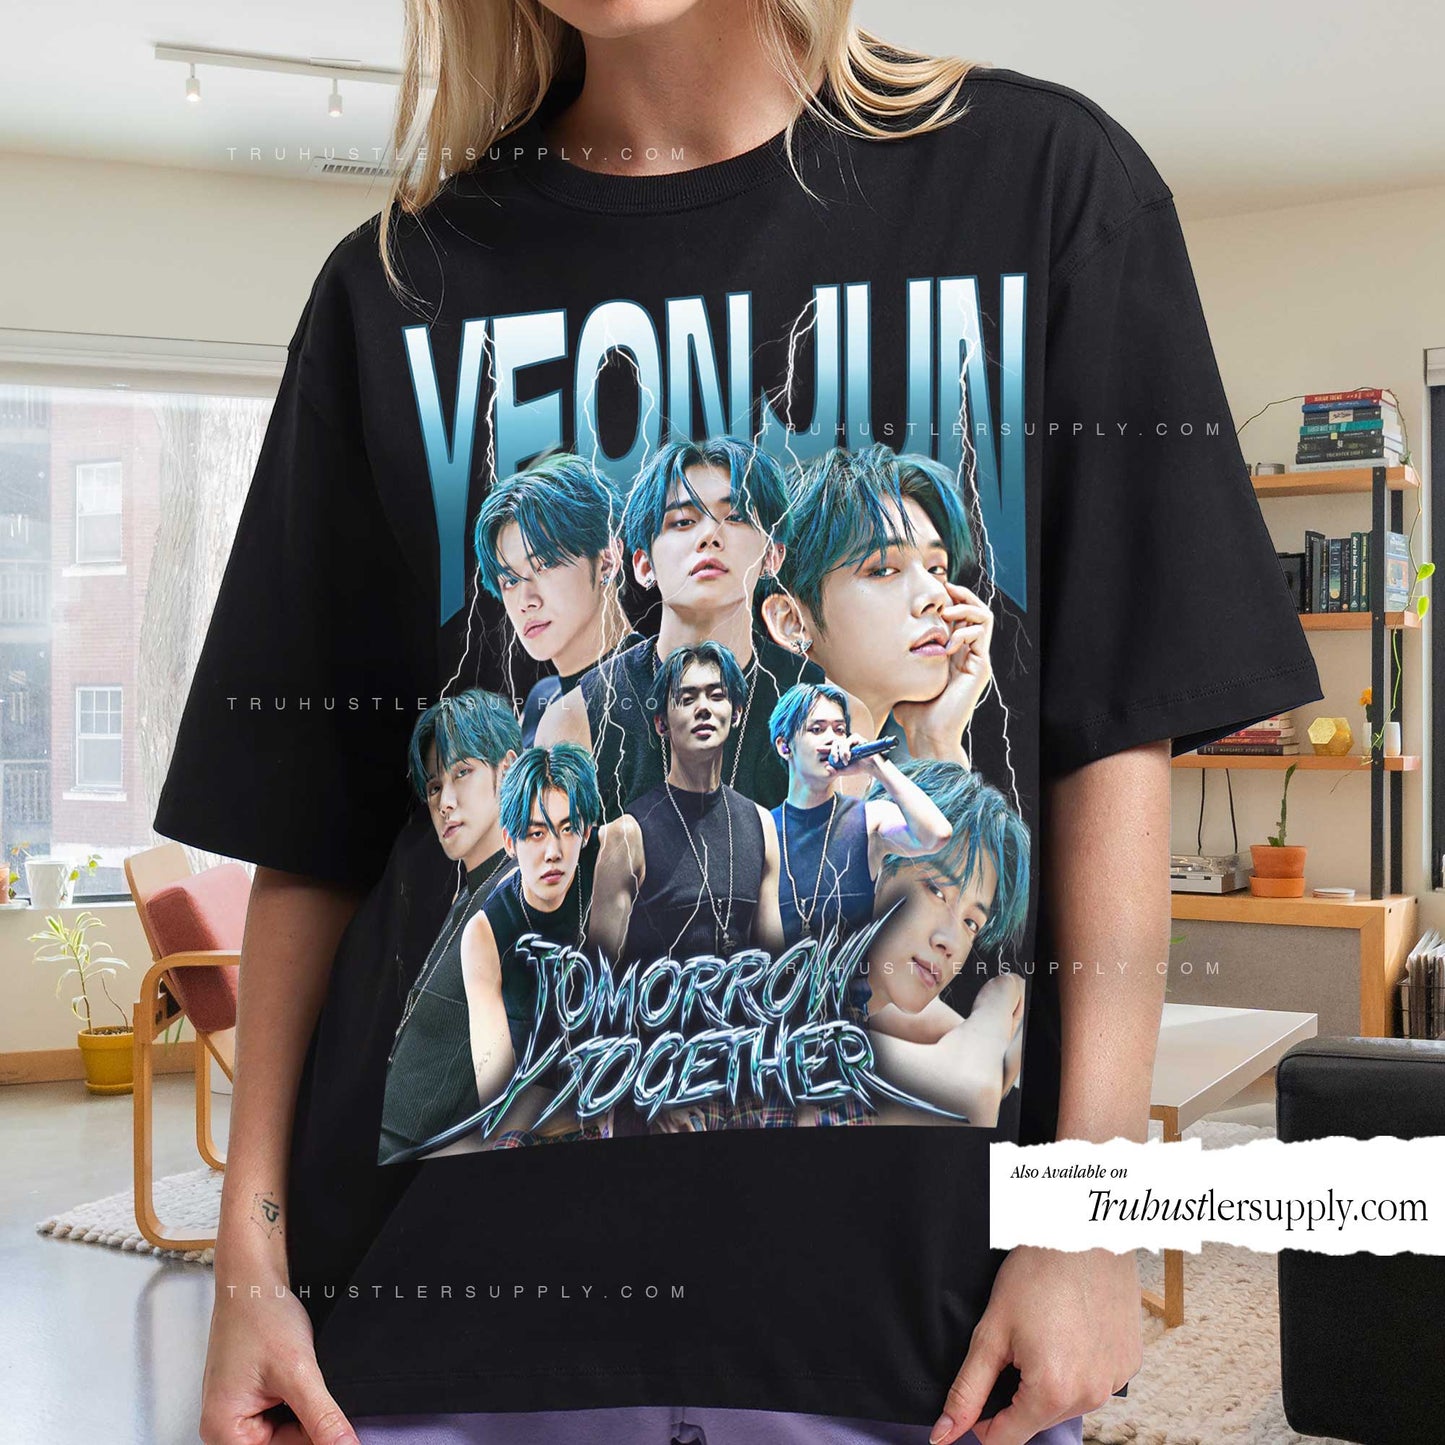 Yeonjun Bootleg Graphic T Shirt